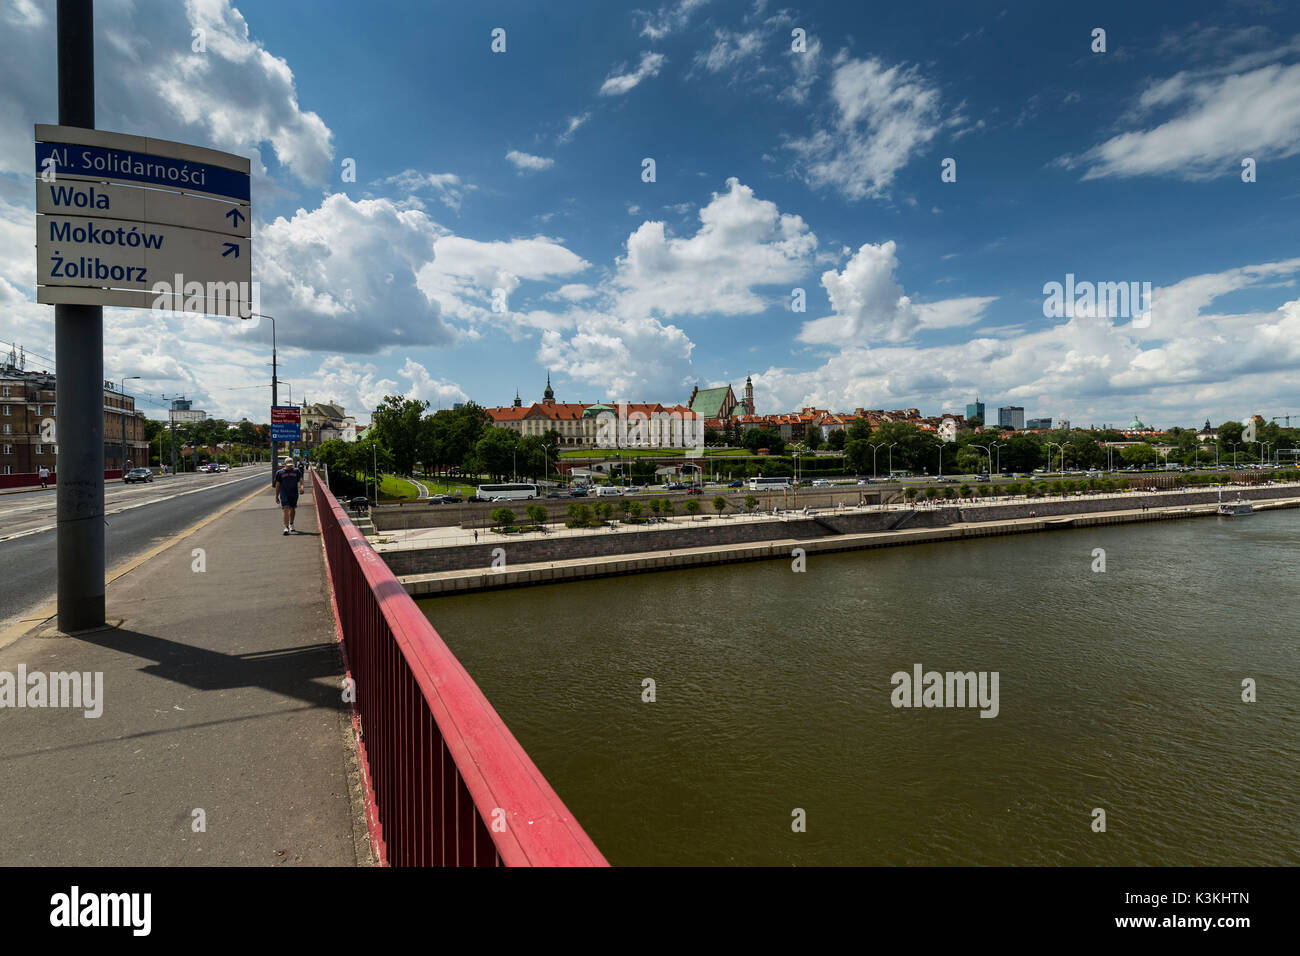 Europa, Poland, Voivodeship Masovian, Warsaw - the capital and largest city of Poland / Old Town / Slasko-Dabrowski Bridge Stock Photo